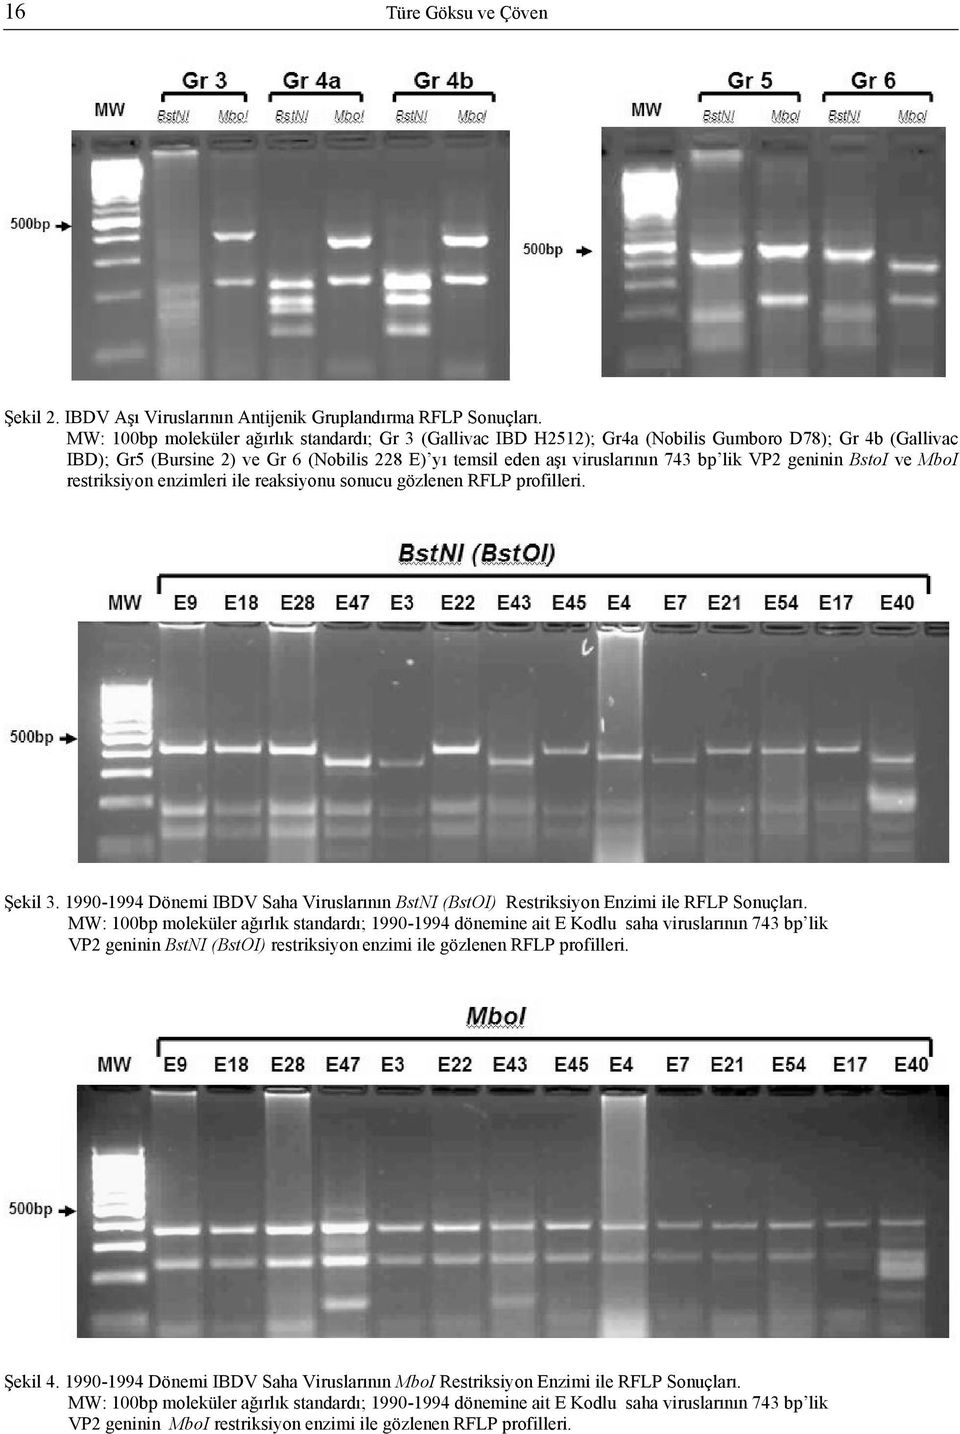 VP2 geninin BstoI ve MboI restriksiyon enzimleri ile reaksiyonu sonucu gözlenen RFLP profilleri. Şekil 3. 1990-1994 Dönemi IBDV Saha Viruslarının BstNI (BstOI) Restriksiyon Enzimi ile RFLP Sonuçları.